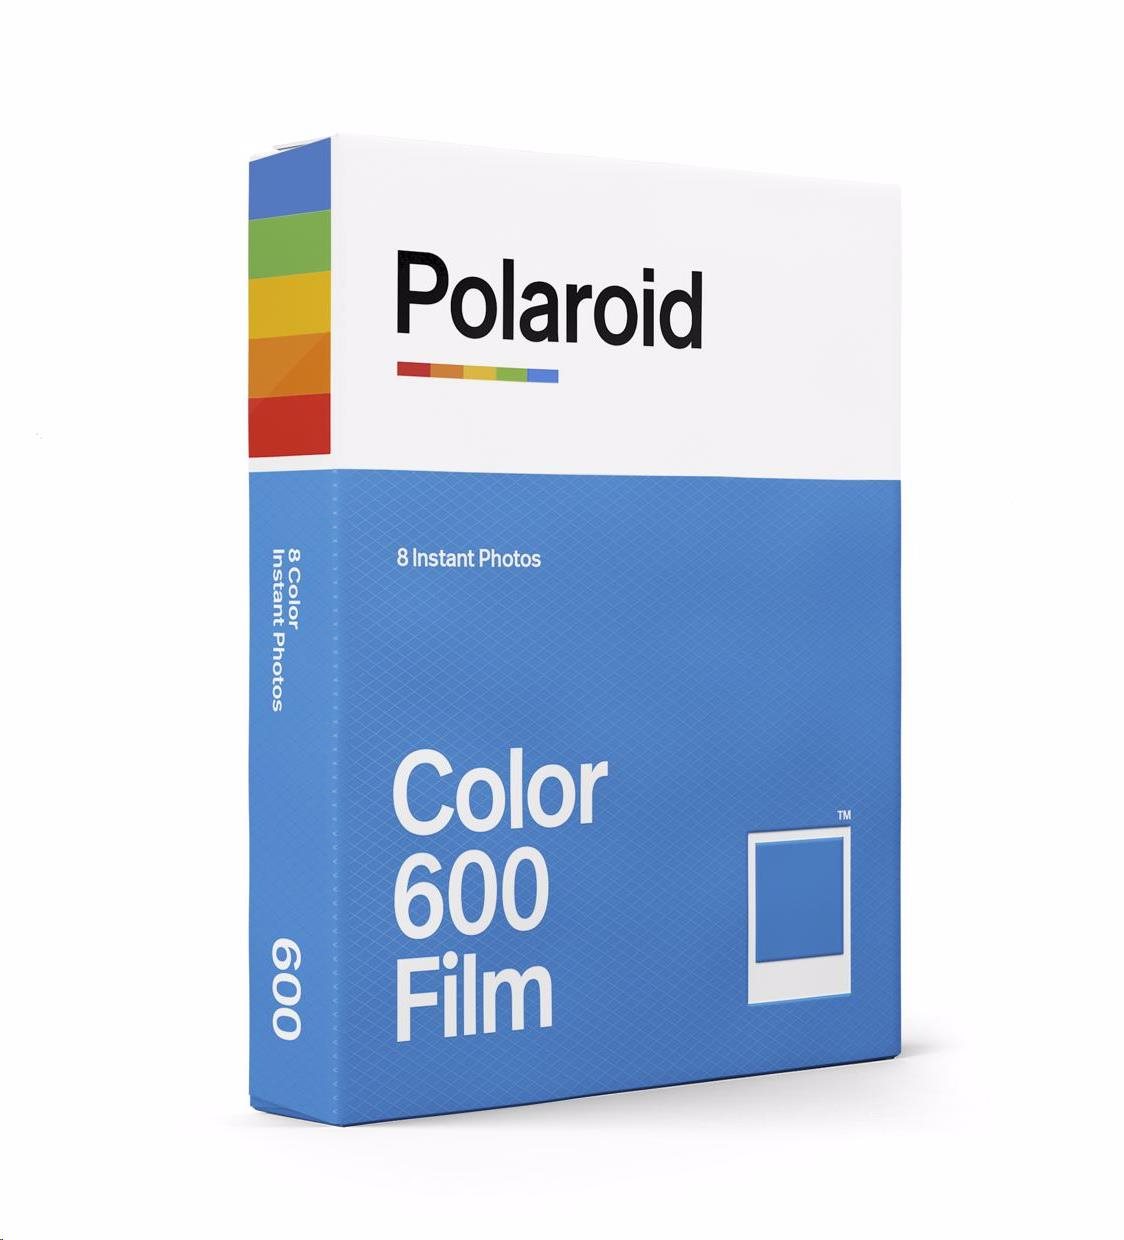 BAZAR - Polaroid Originals Color Film For 600 - Poškozený obal (Komplet)1 